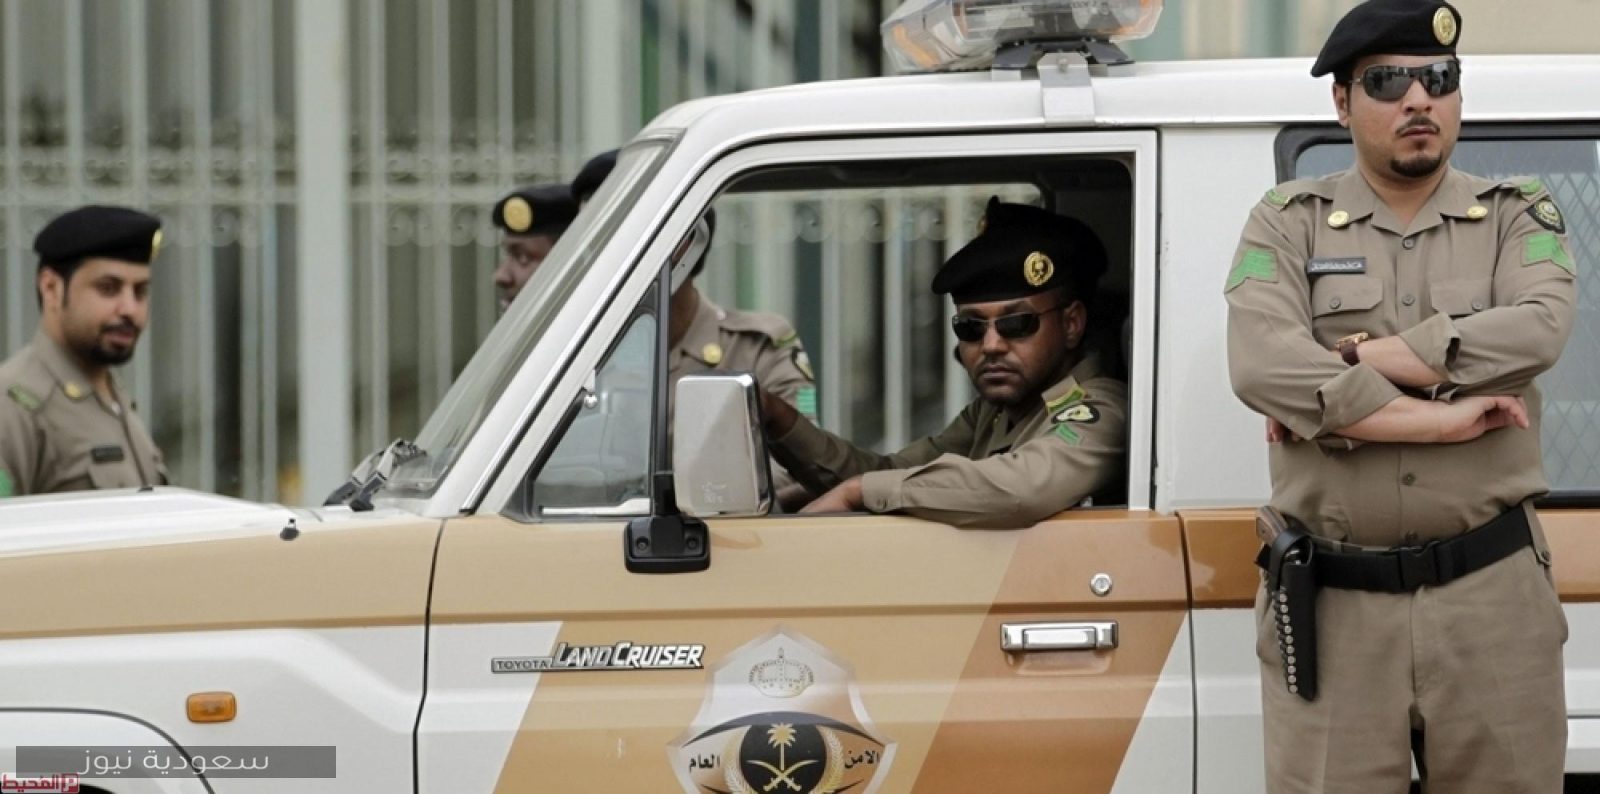 طريقة حجز موعد في المرور السعودي (الخطوات والرابط)